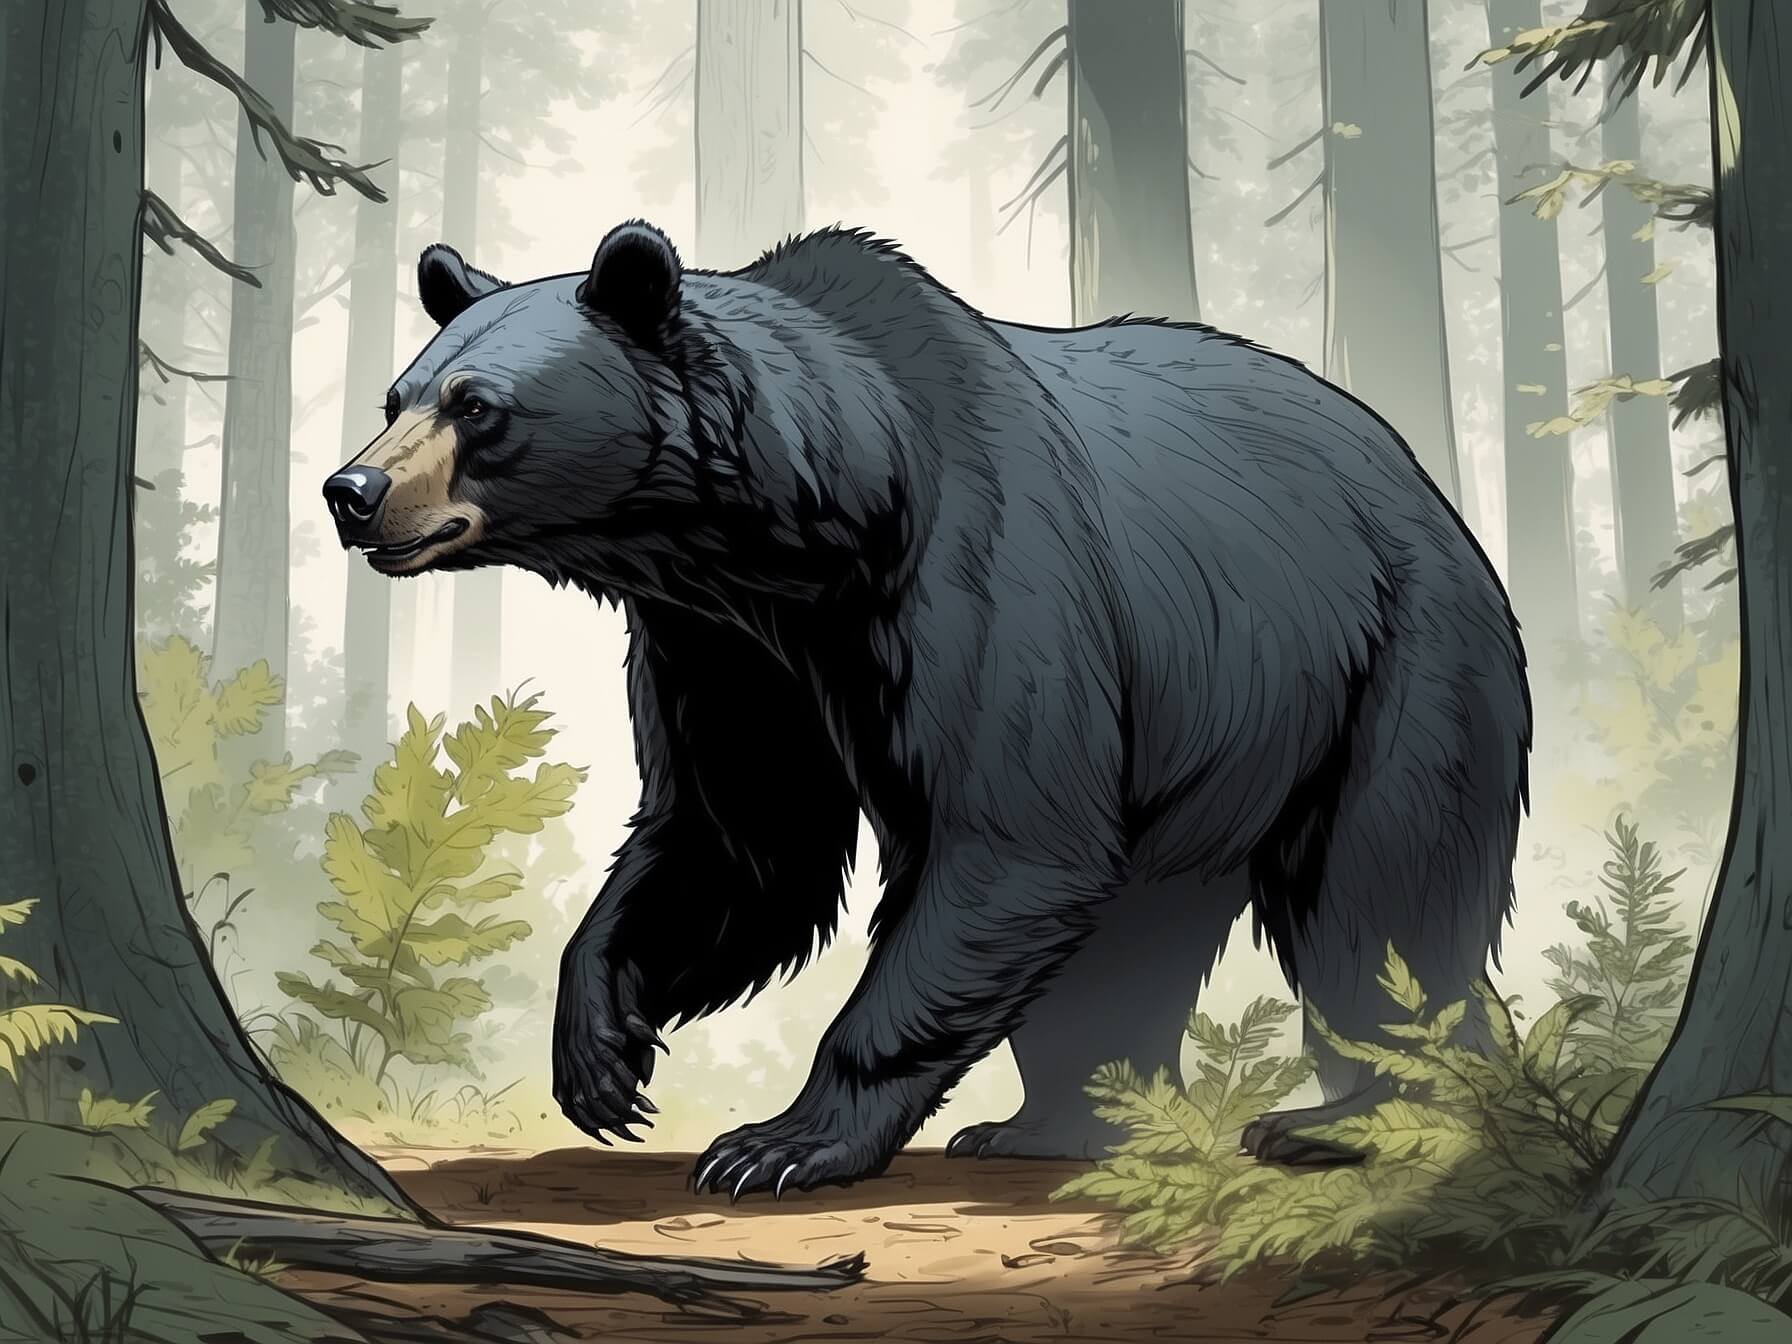 Art by Todd McFarlane AlbedoBase XL Illustrate an American black bear walking throug 3